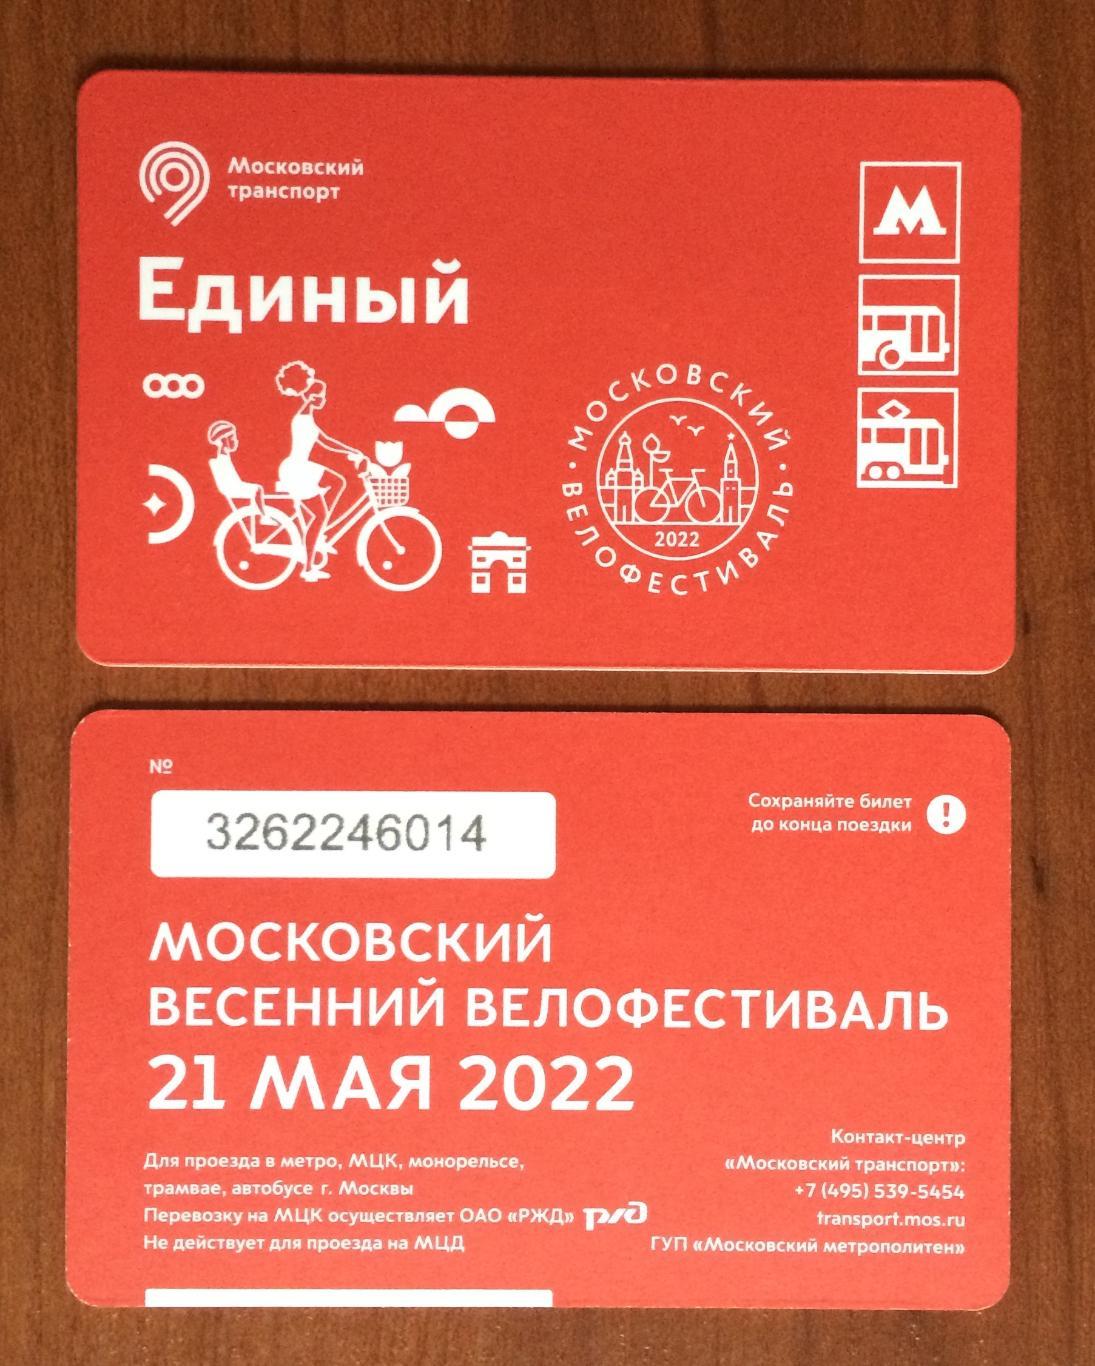 Билет Метро Единый Московский велофестиваль 21 мая 2022 год